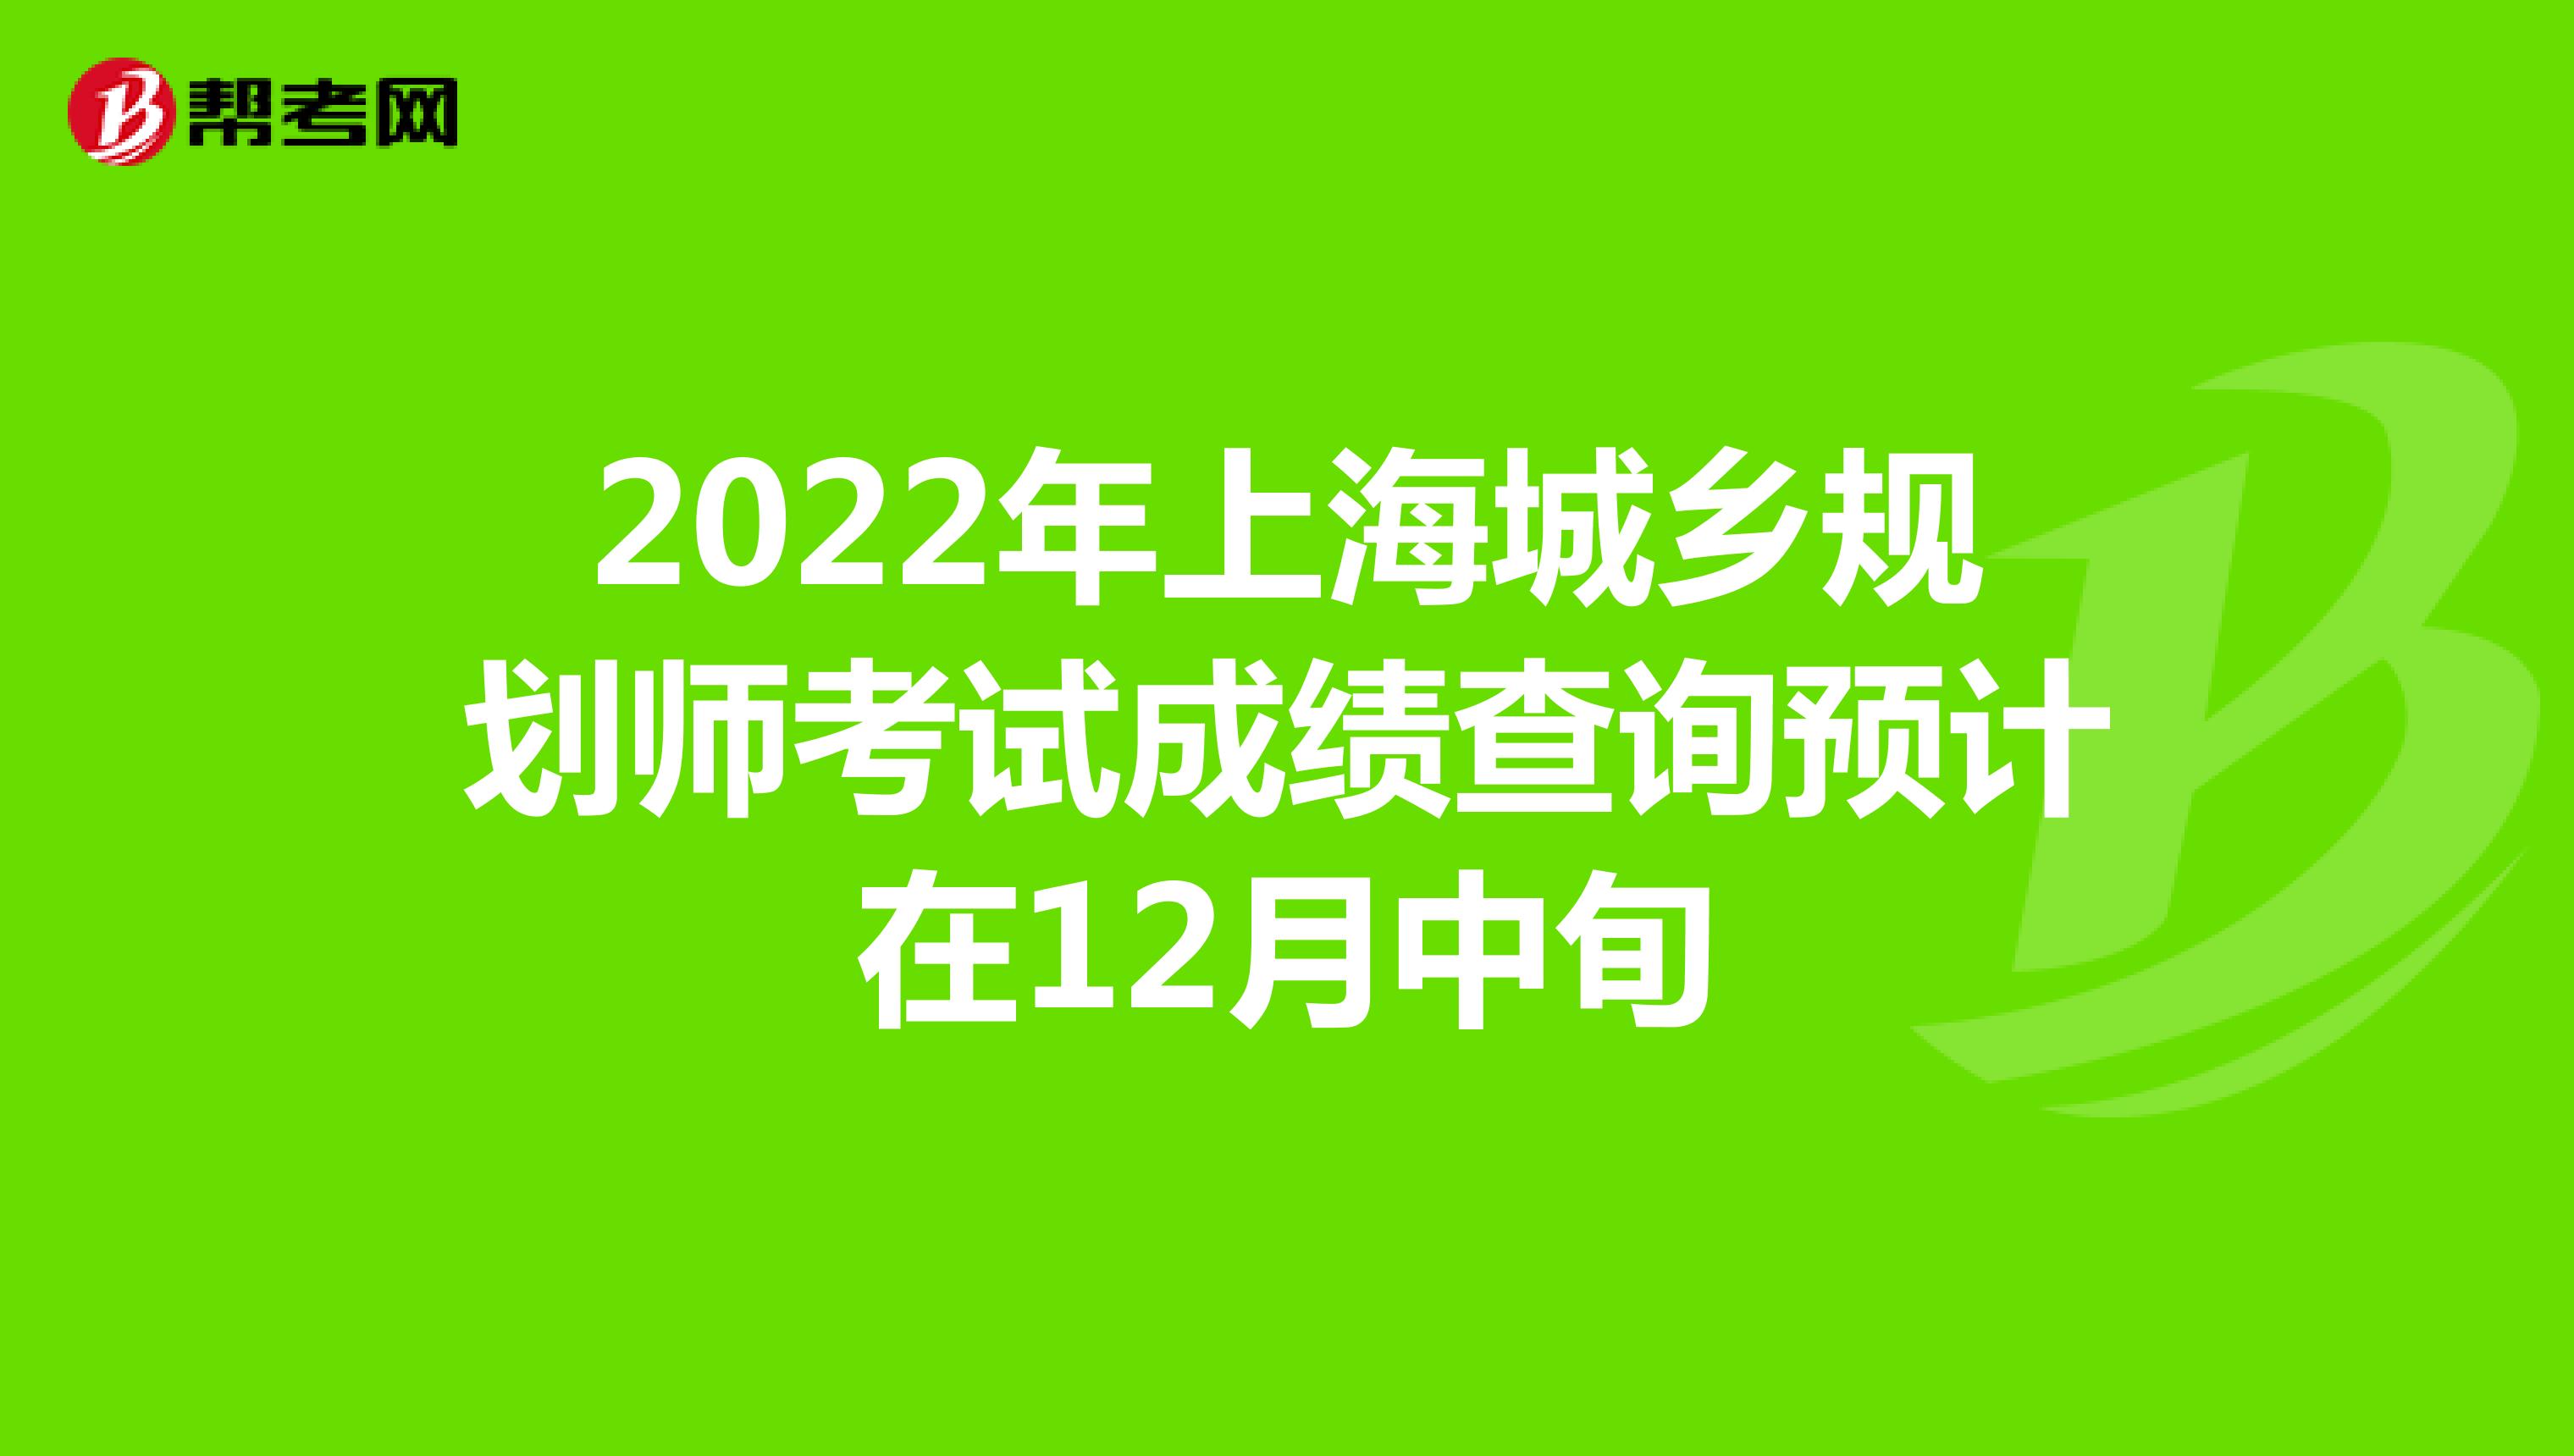 2022年上海城乡规划师考试成绩查询预计在12月中旬